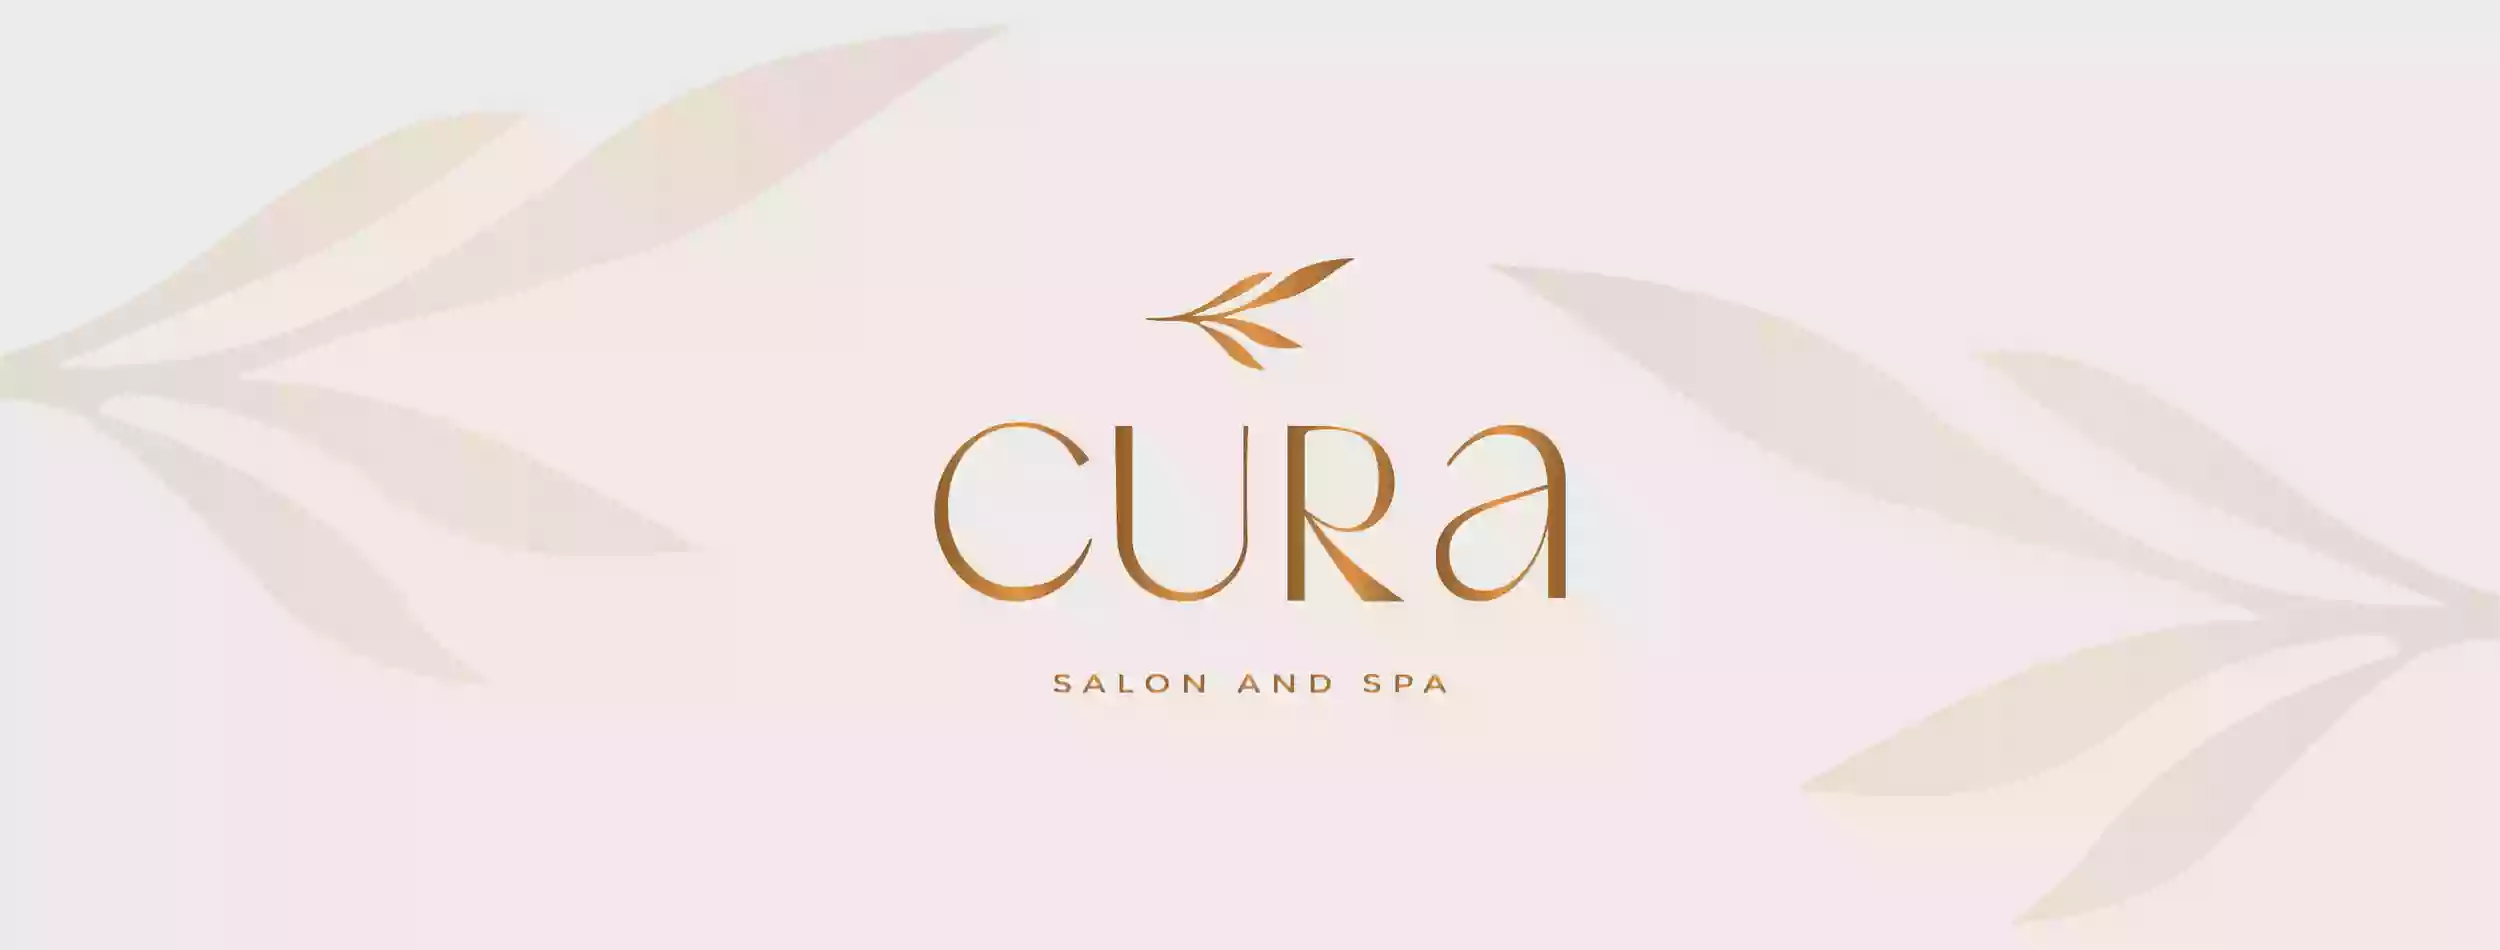 Cura Salon and Spa